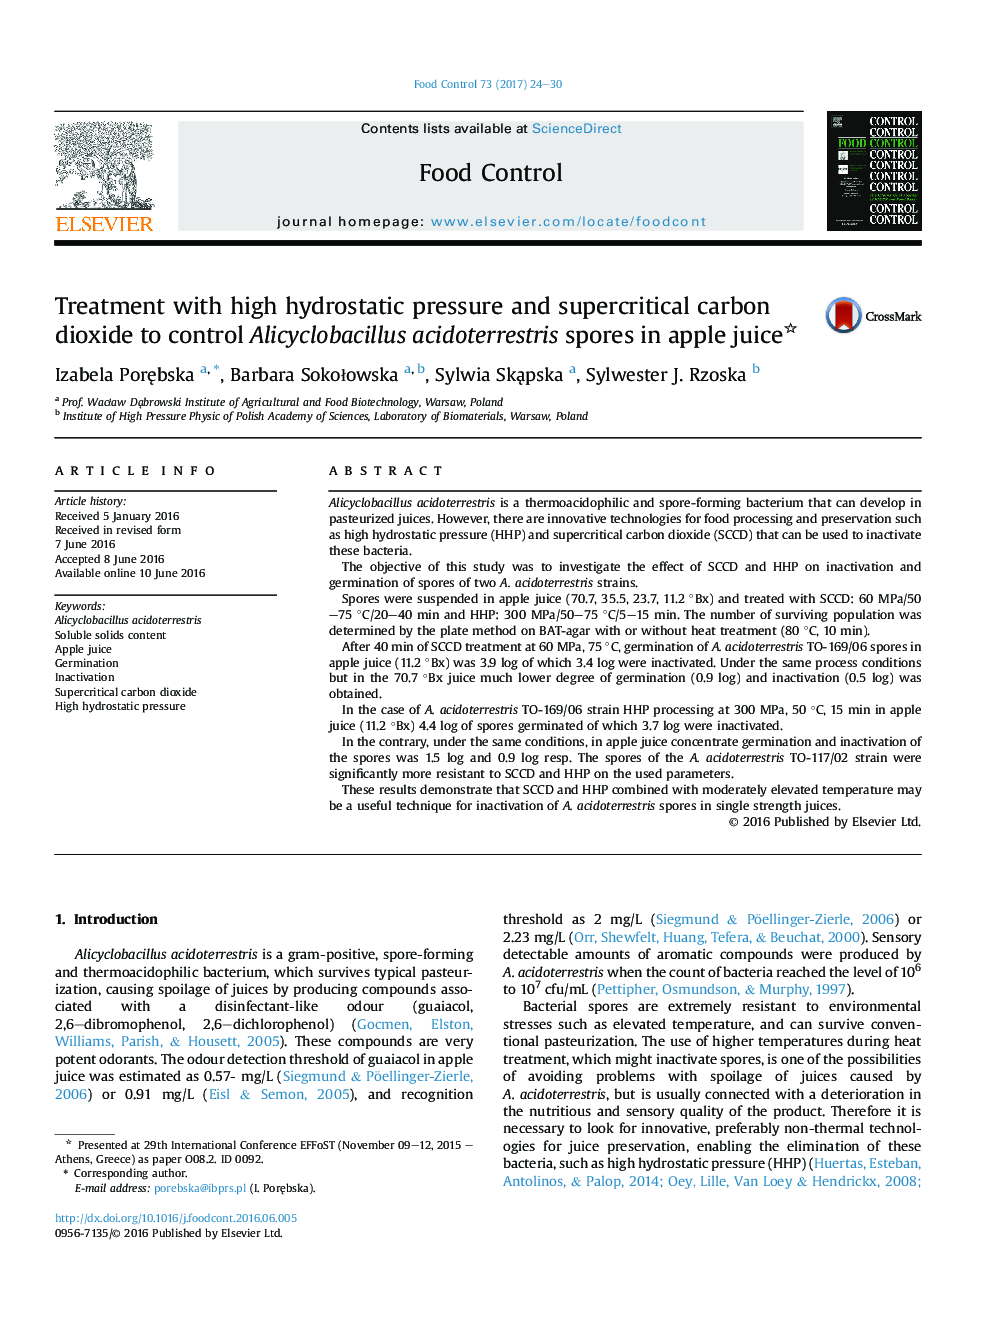 درمان با فشار هیدرواستاتیک بالا و دی اکسید کربن فوق بحرانی برای کنترل اسپورهای Alicyclobacillus acidoterrestris در آب سیب